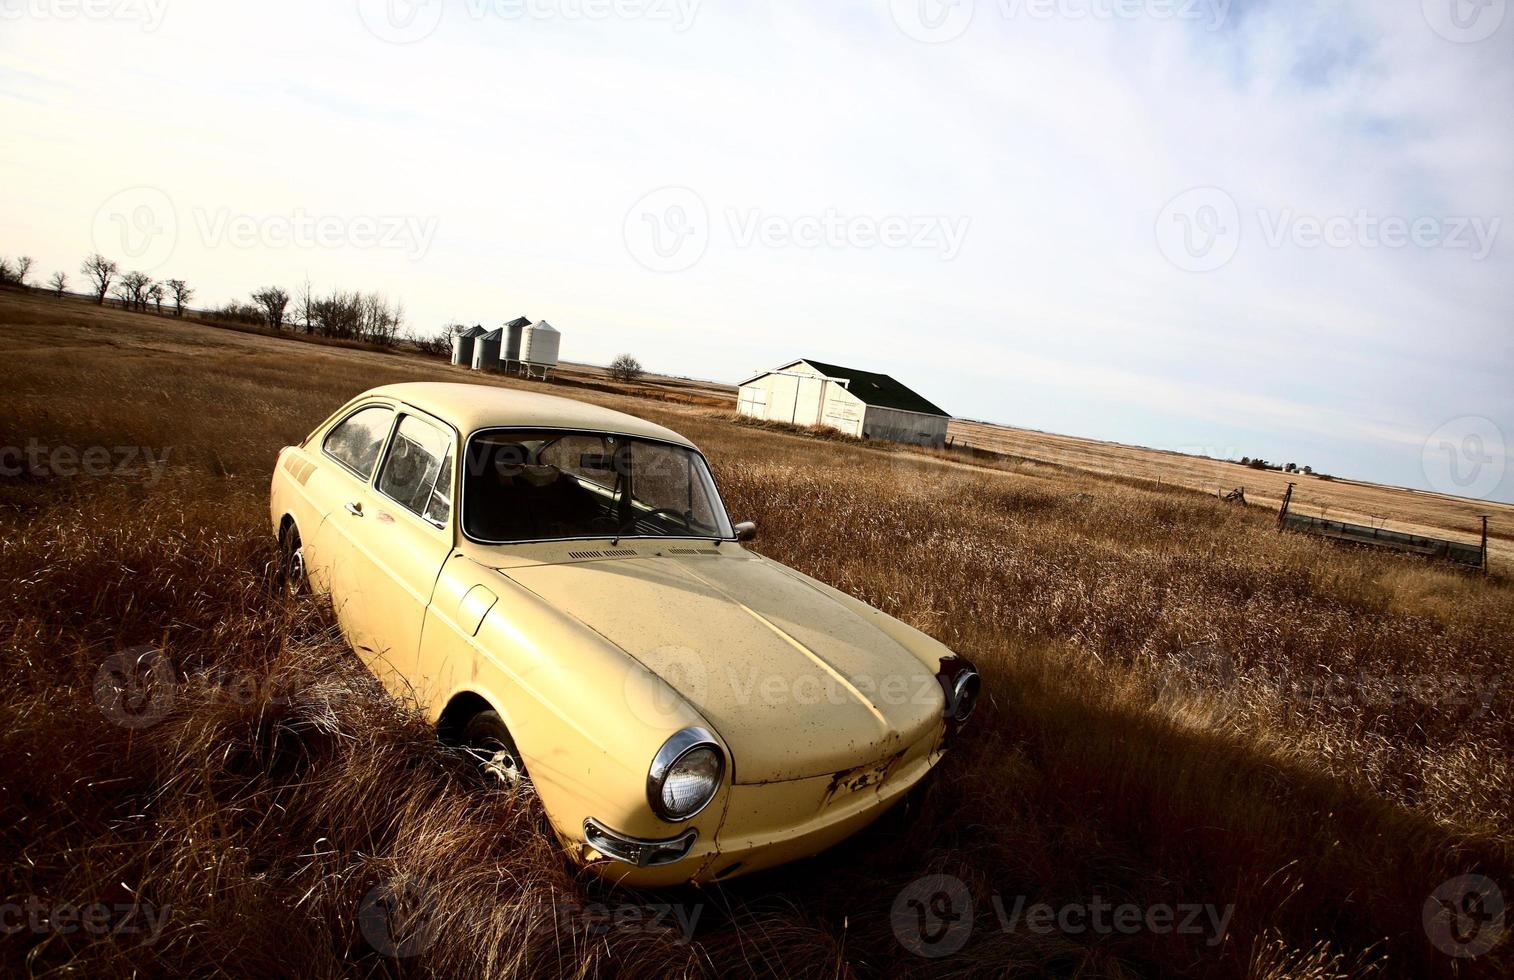 voiture étrangère jaune abandonnée dans les hautes herbes photo